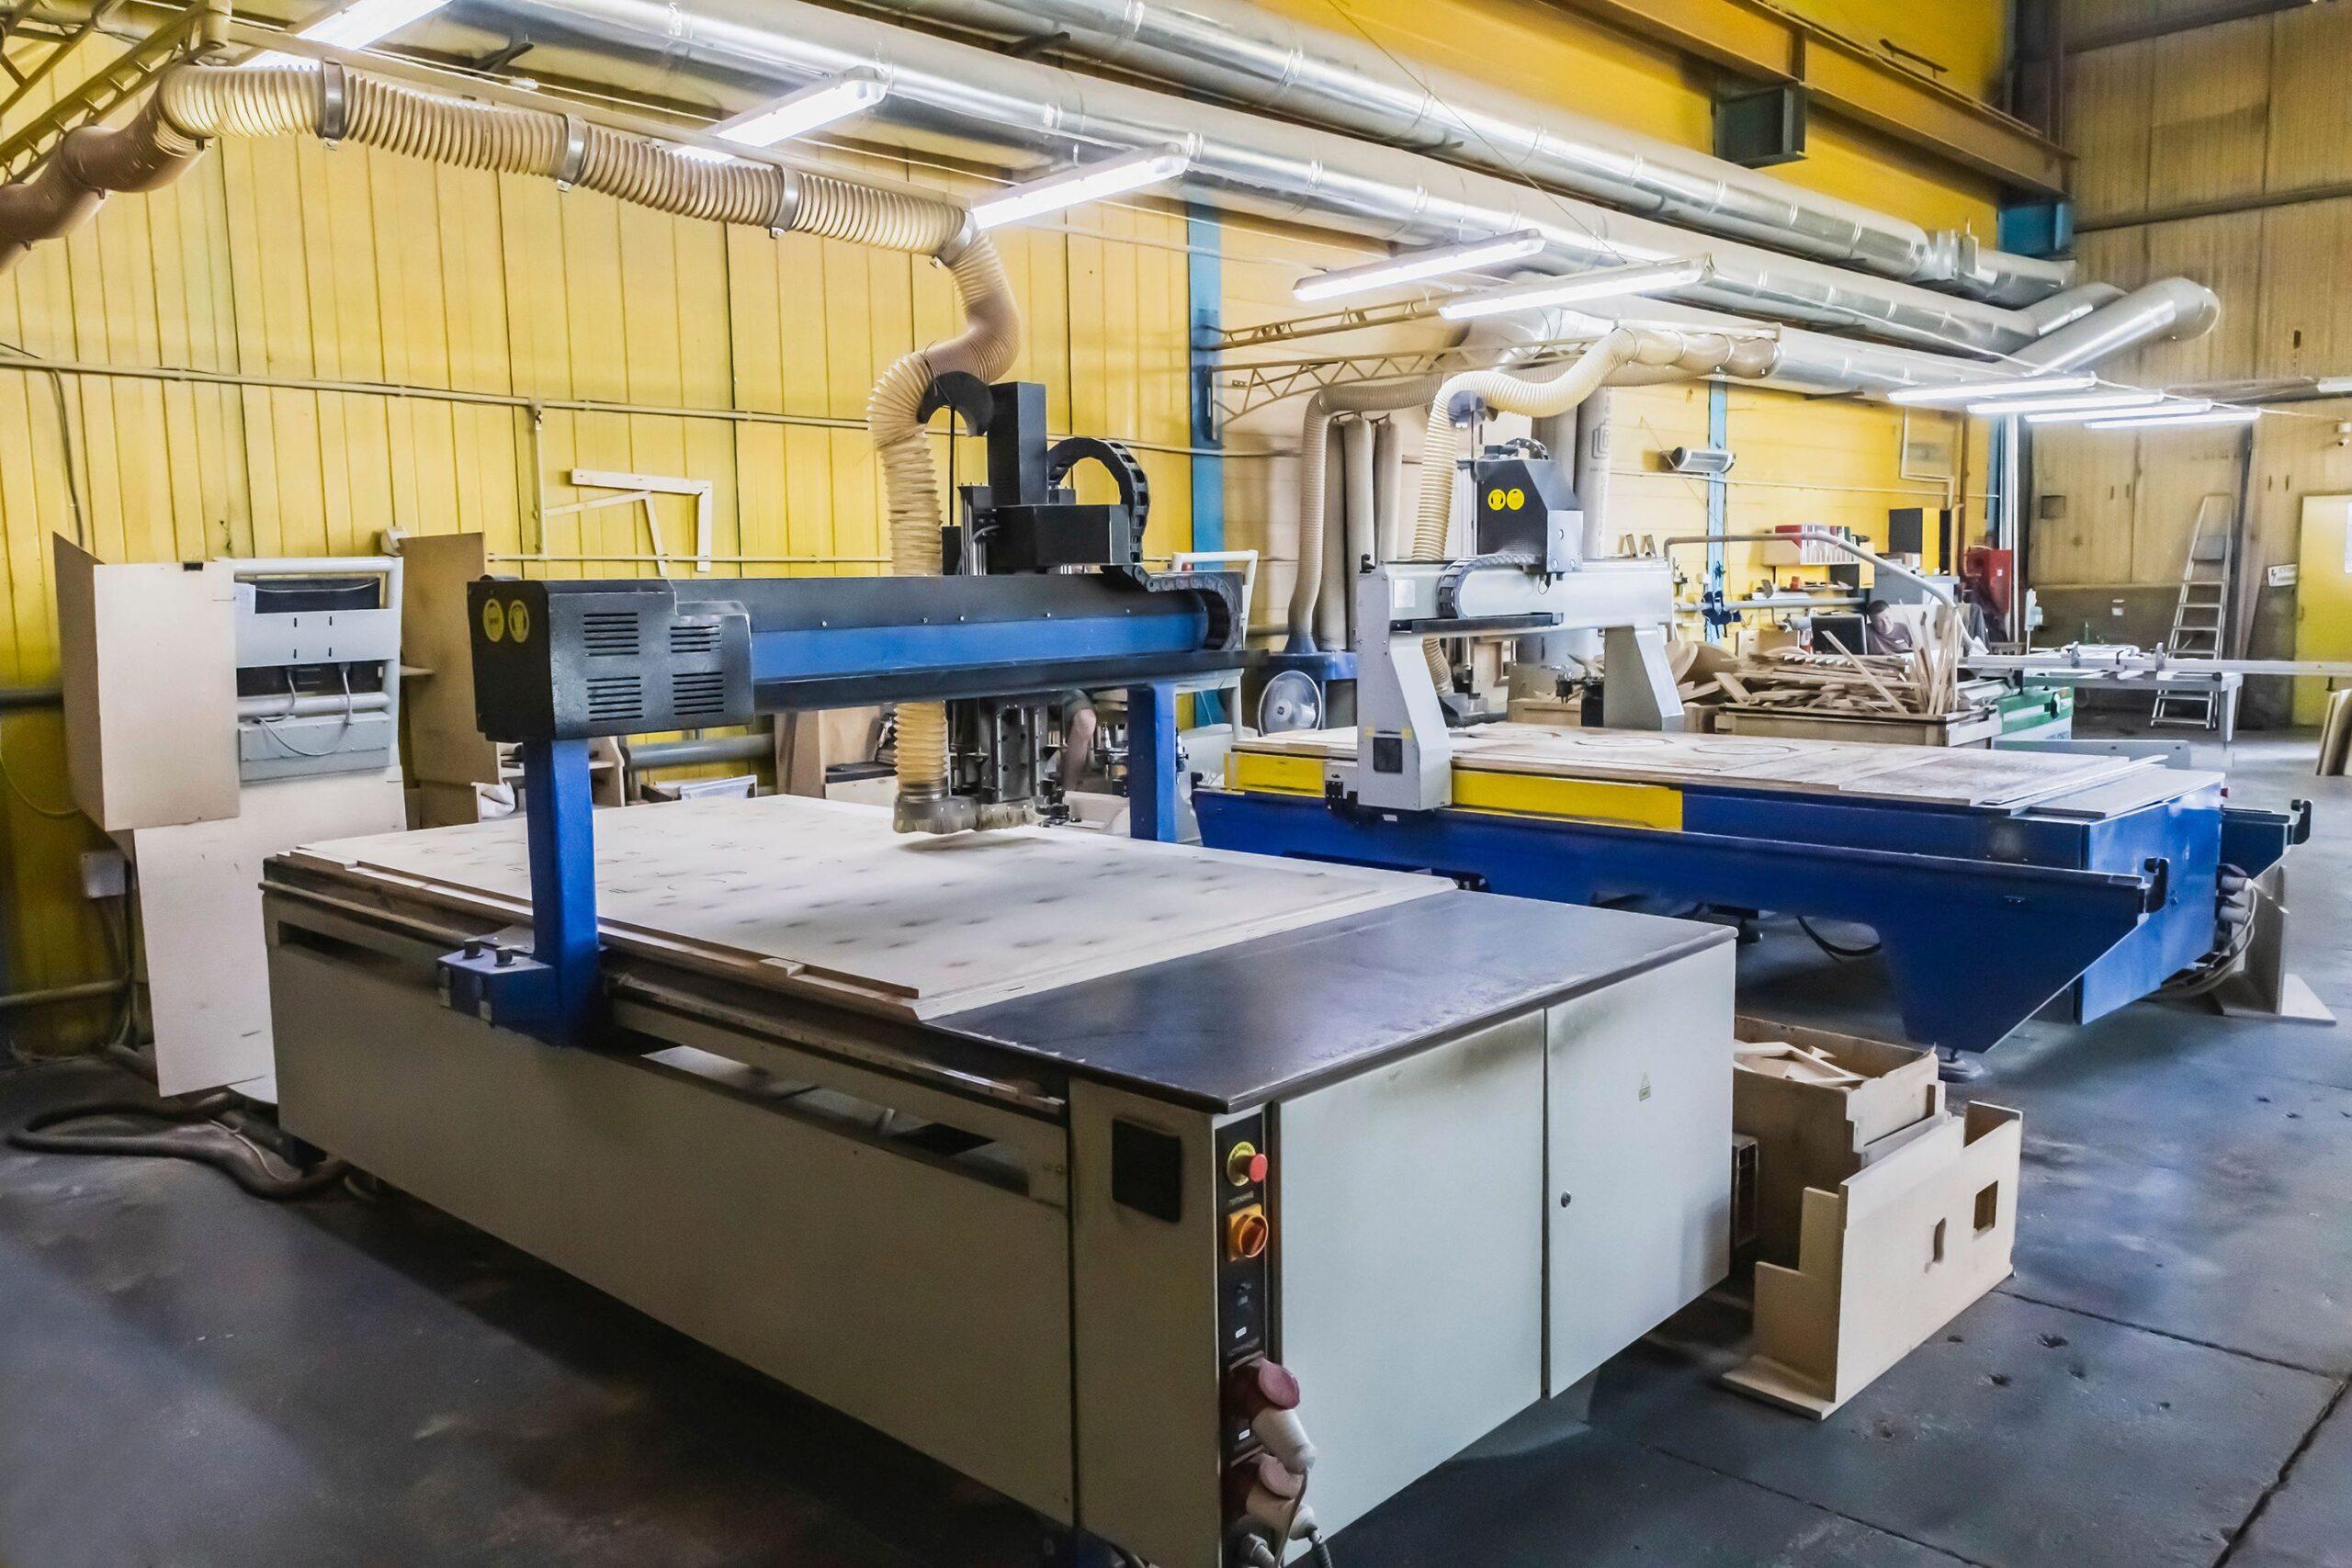 Zwei große CNC-Maschinen schneiden Zuschnitte verschiedener Formen auf einer Sperrholzplatte